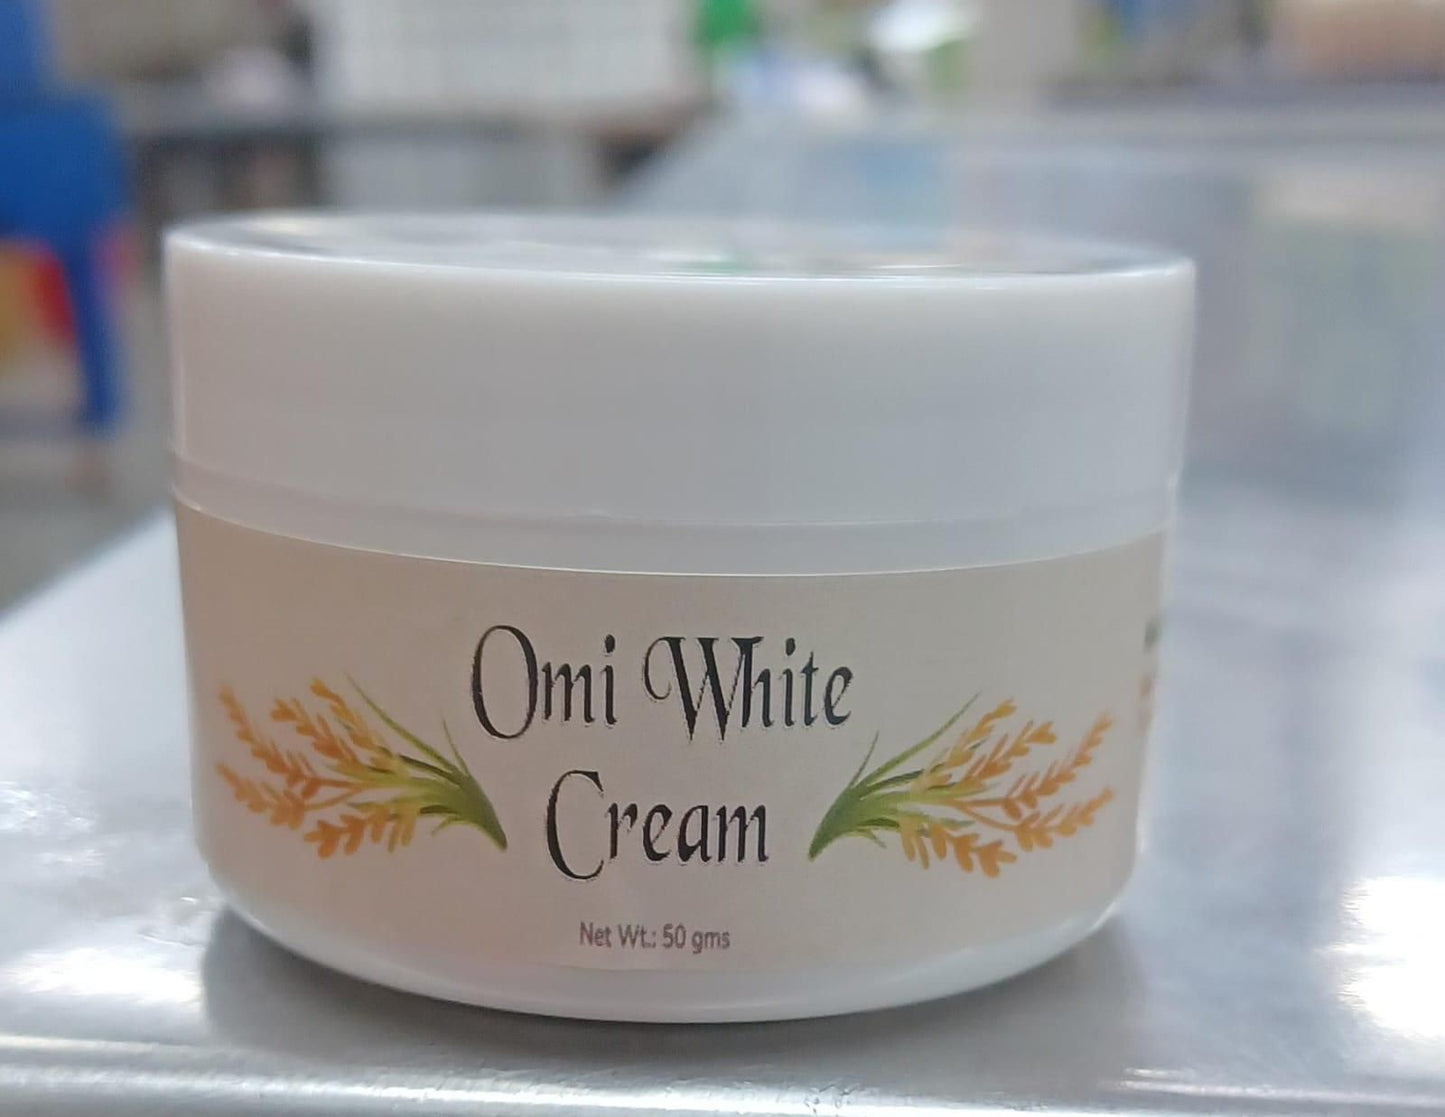 OMICARE organics Skin glow and Whitening Cream